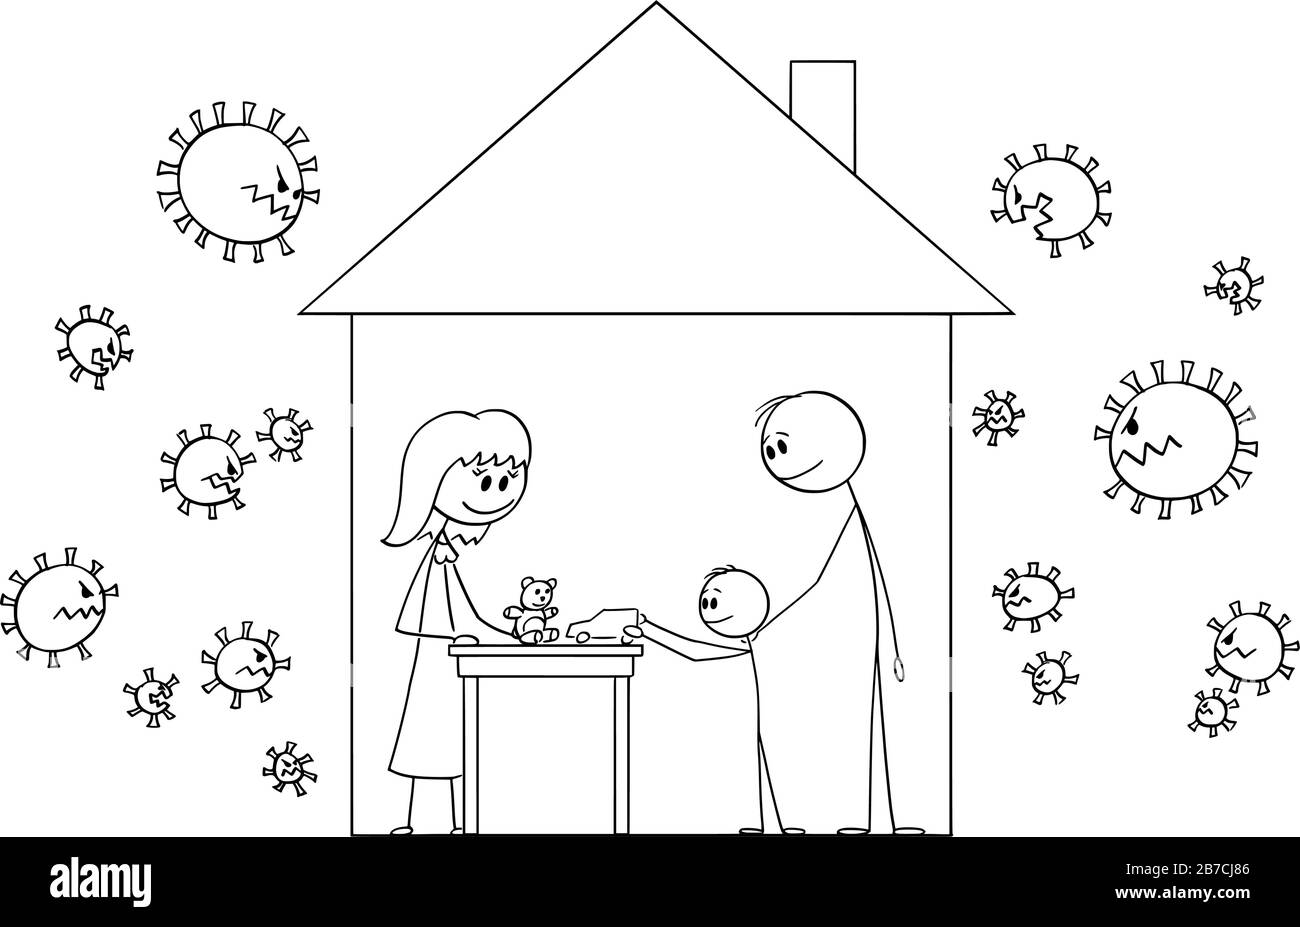 Dessin de dessin de dessin de dessin de dessin de dessin conceptuel de la famille heureuse de la mère, du père et de l'enfant vivant à la maison de famille, à l'abri de l'infection de covid-19 de coronavirus. Illustration de Vecteur